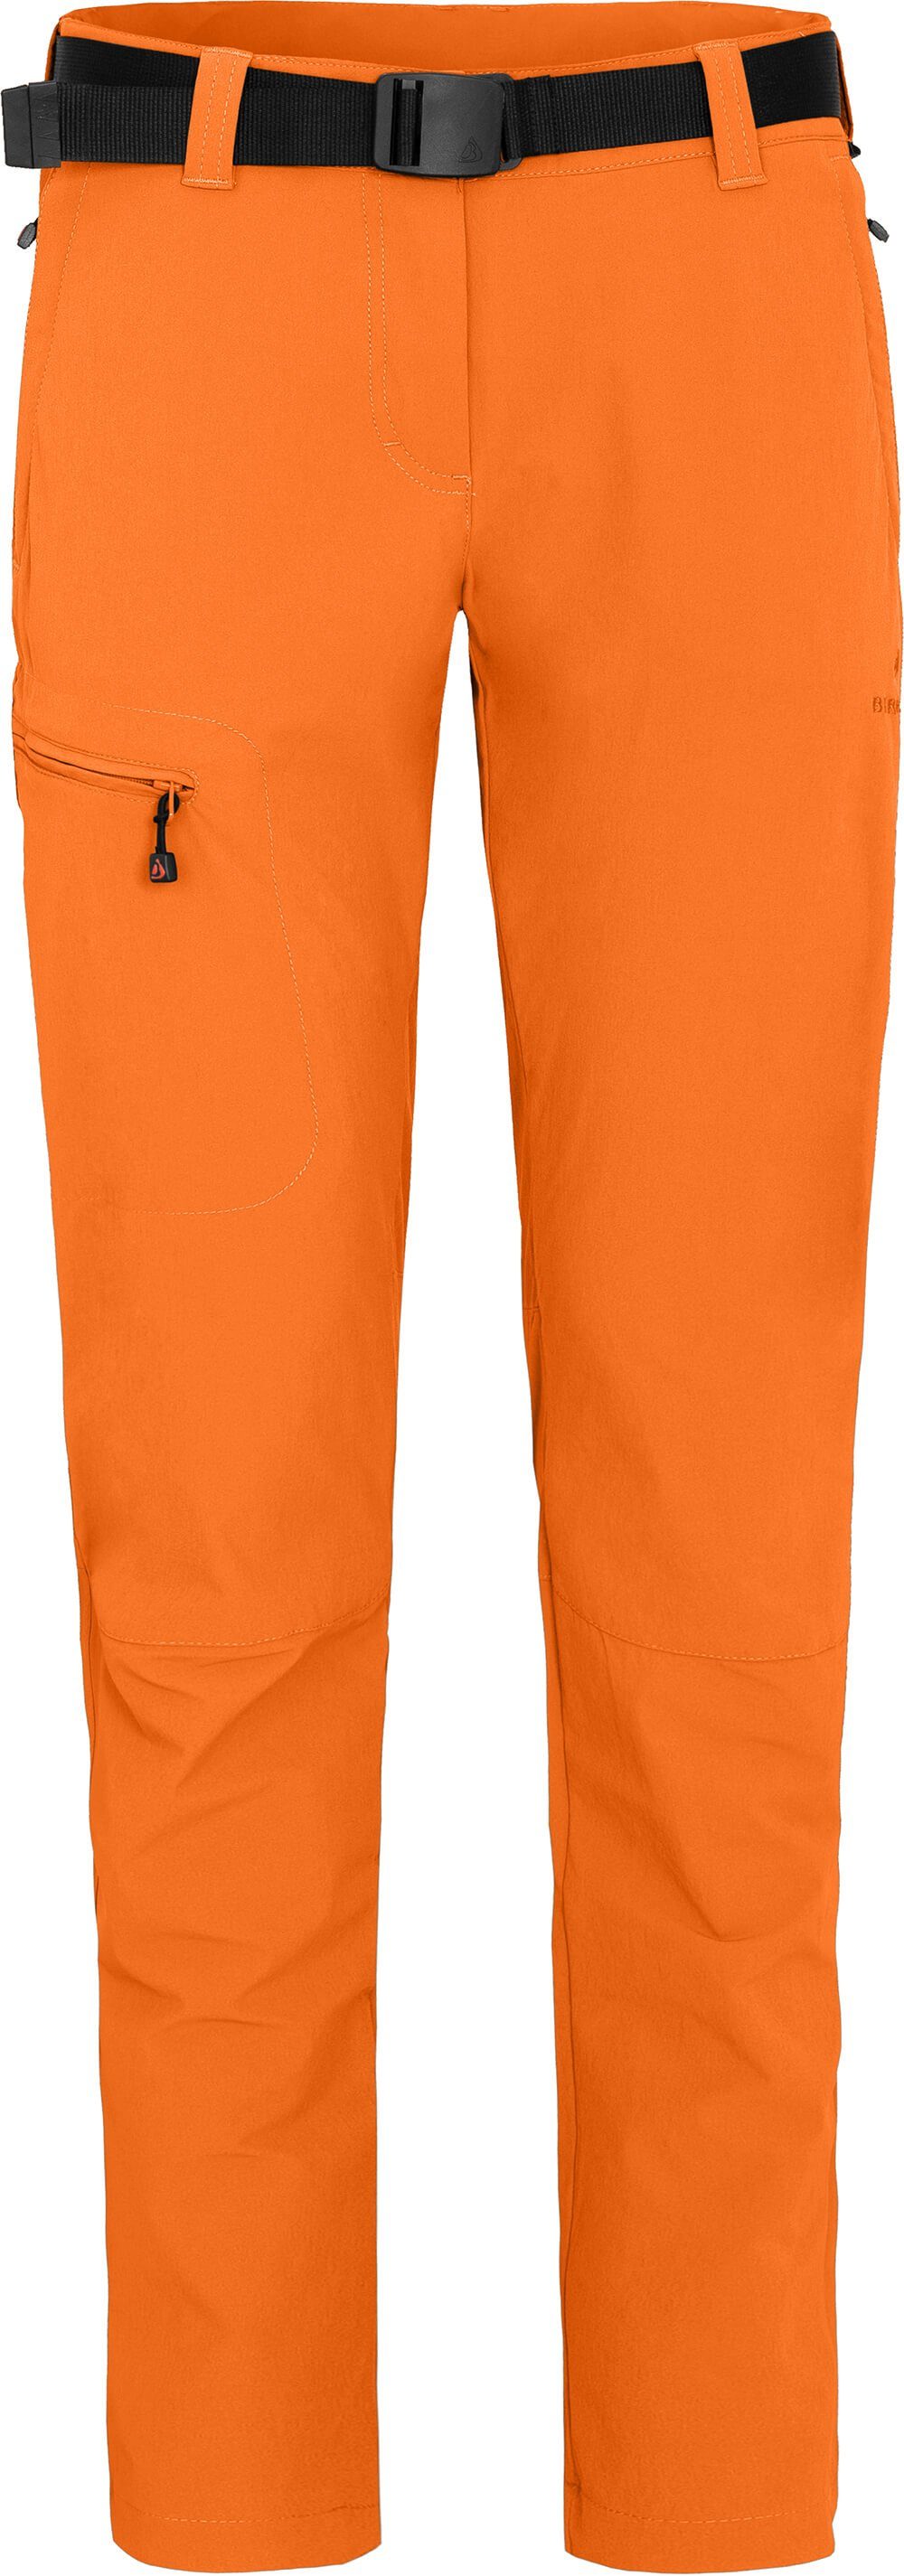 MENA Wanderhose, orange Bergson vielseitig, Kurzgrößen, Damen (slim) Outdoorhose pflegeleicht,